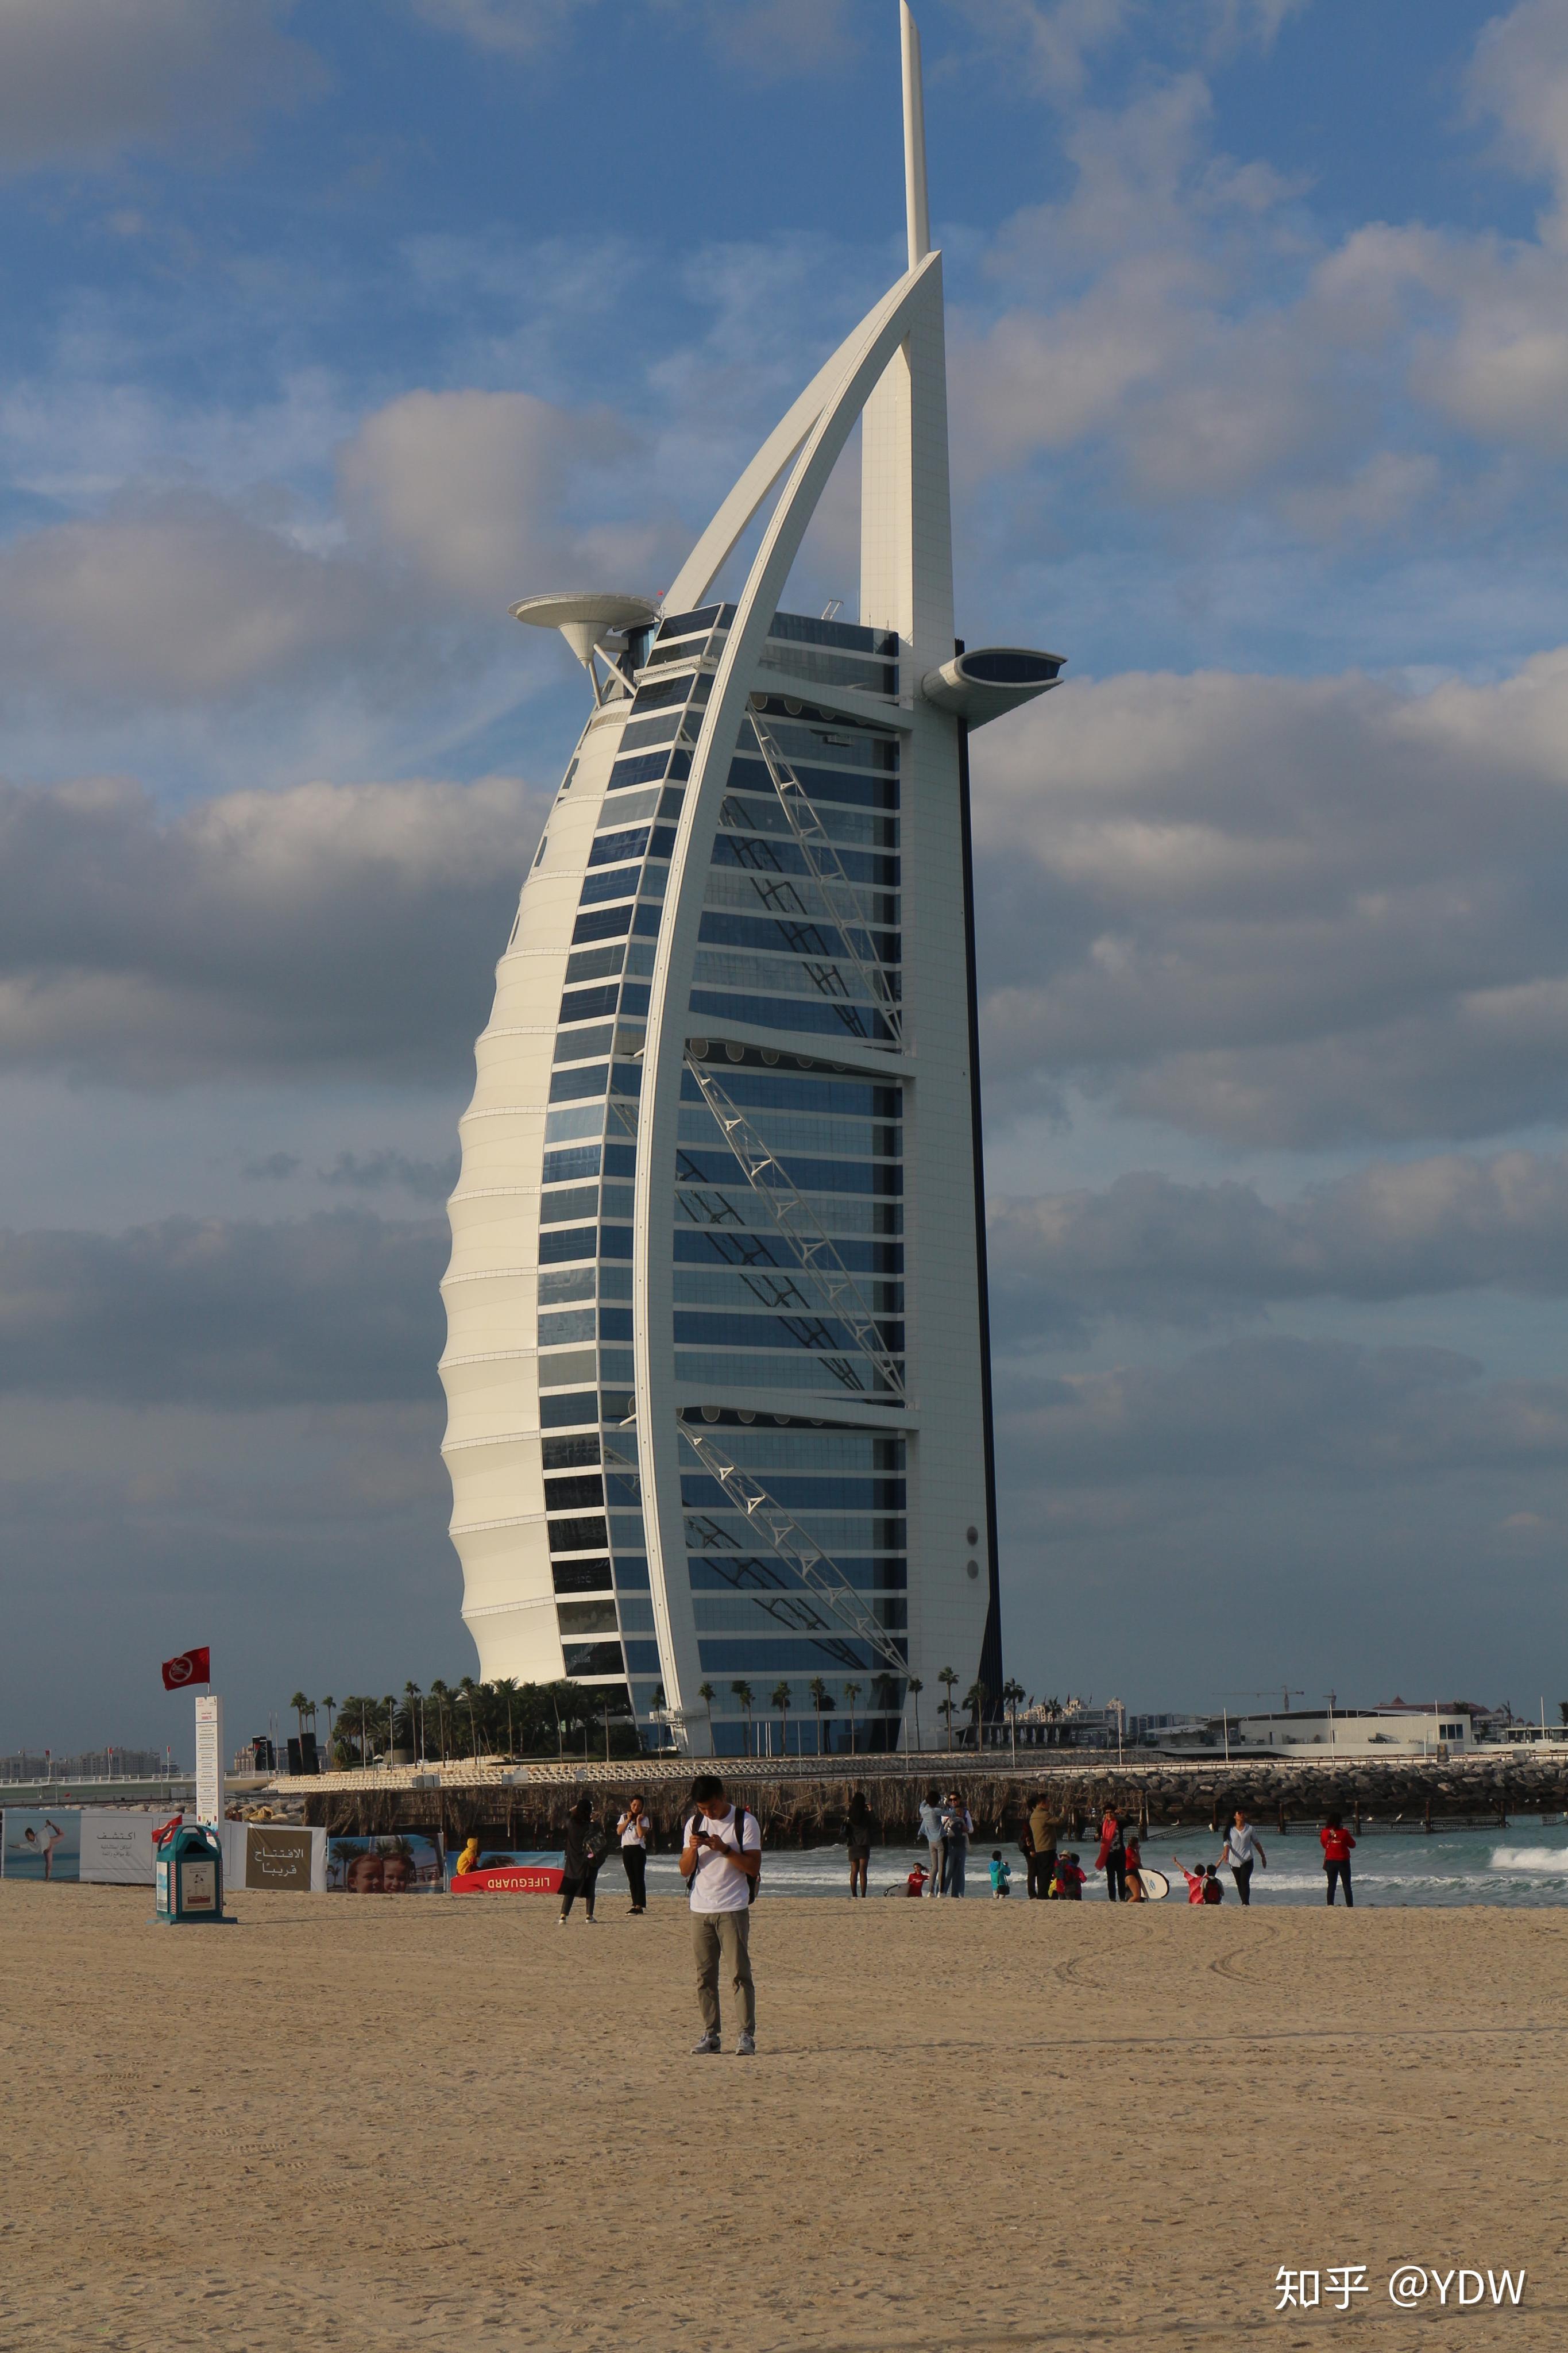 迪拜是迪拜酋长国的首都,也是阿联酋长国七个组成国中人口最多的